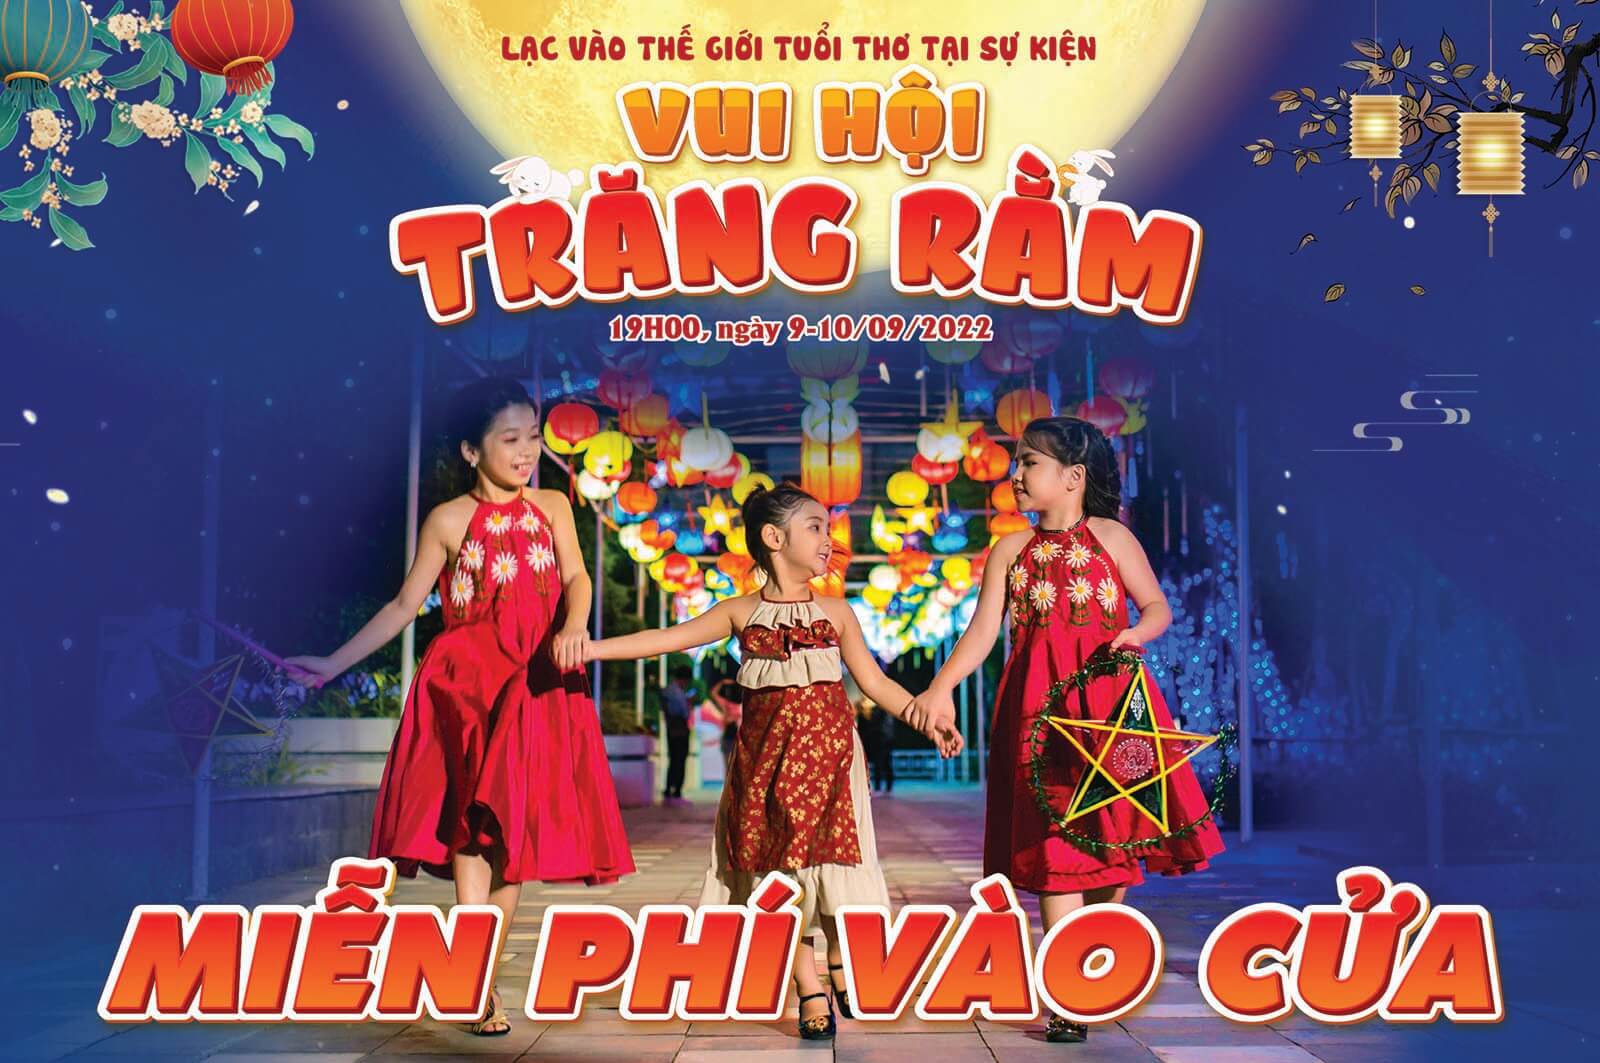 Mien Phi Vao Cua Vui Hoi Trang Ram Tai Asia Park 9